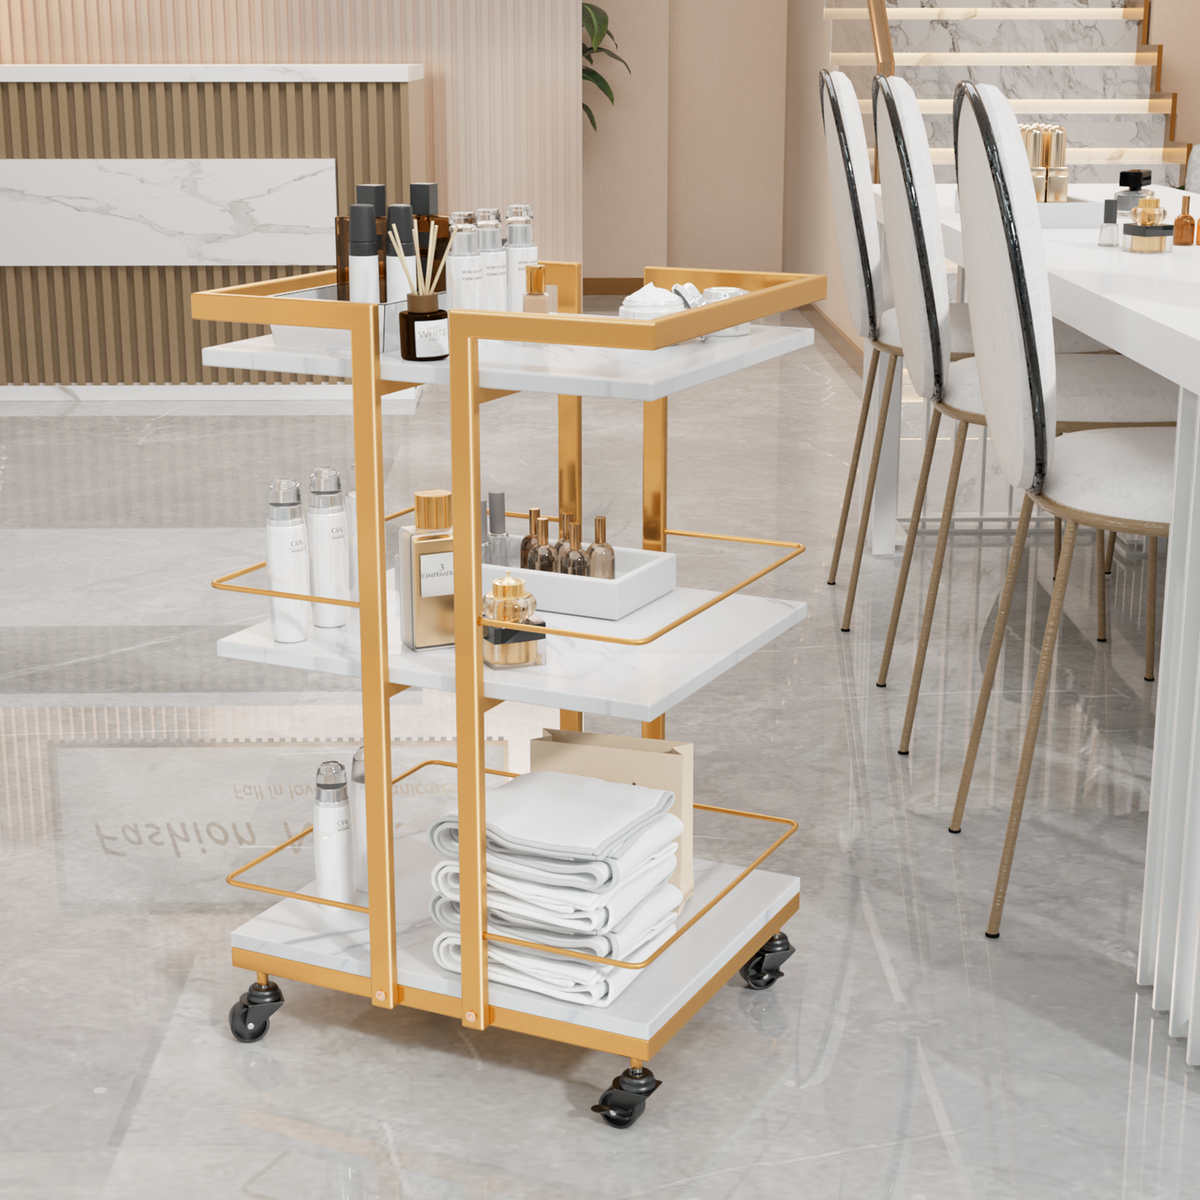 OmySalon Rolling Esthetician Trolley Cart w/Wheels & 3 Wood Shelves